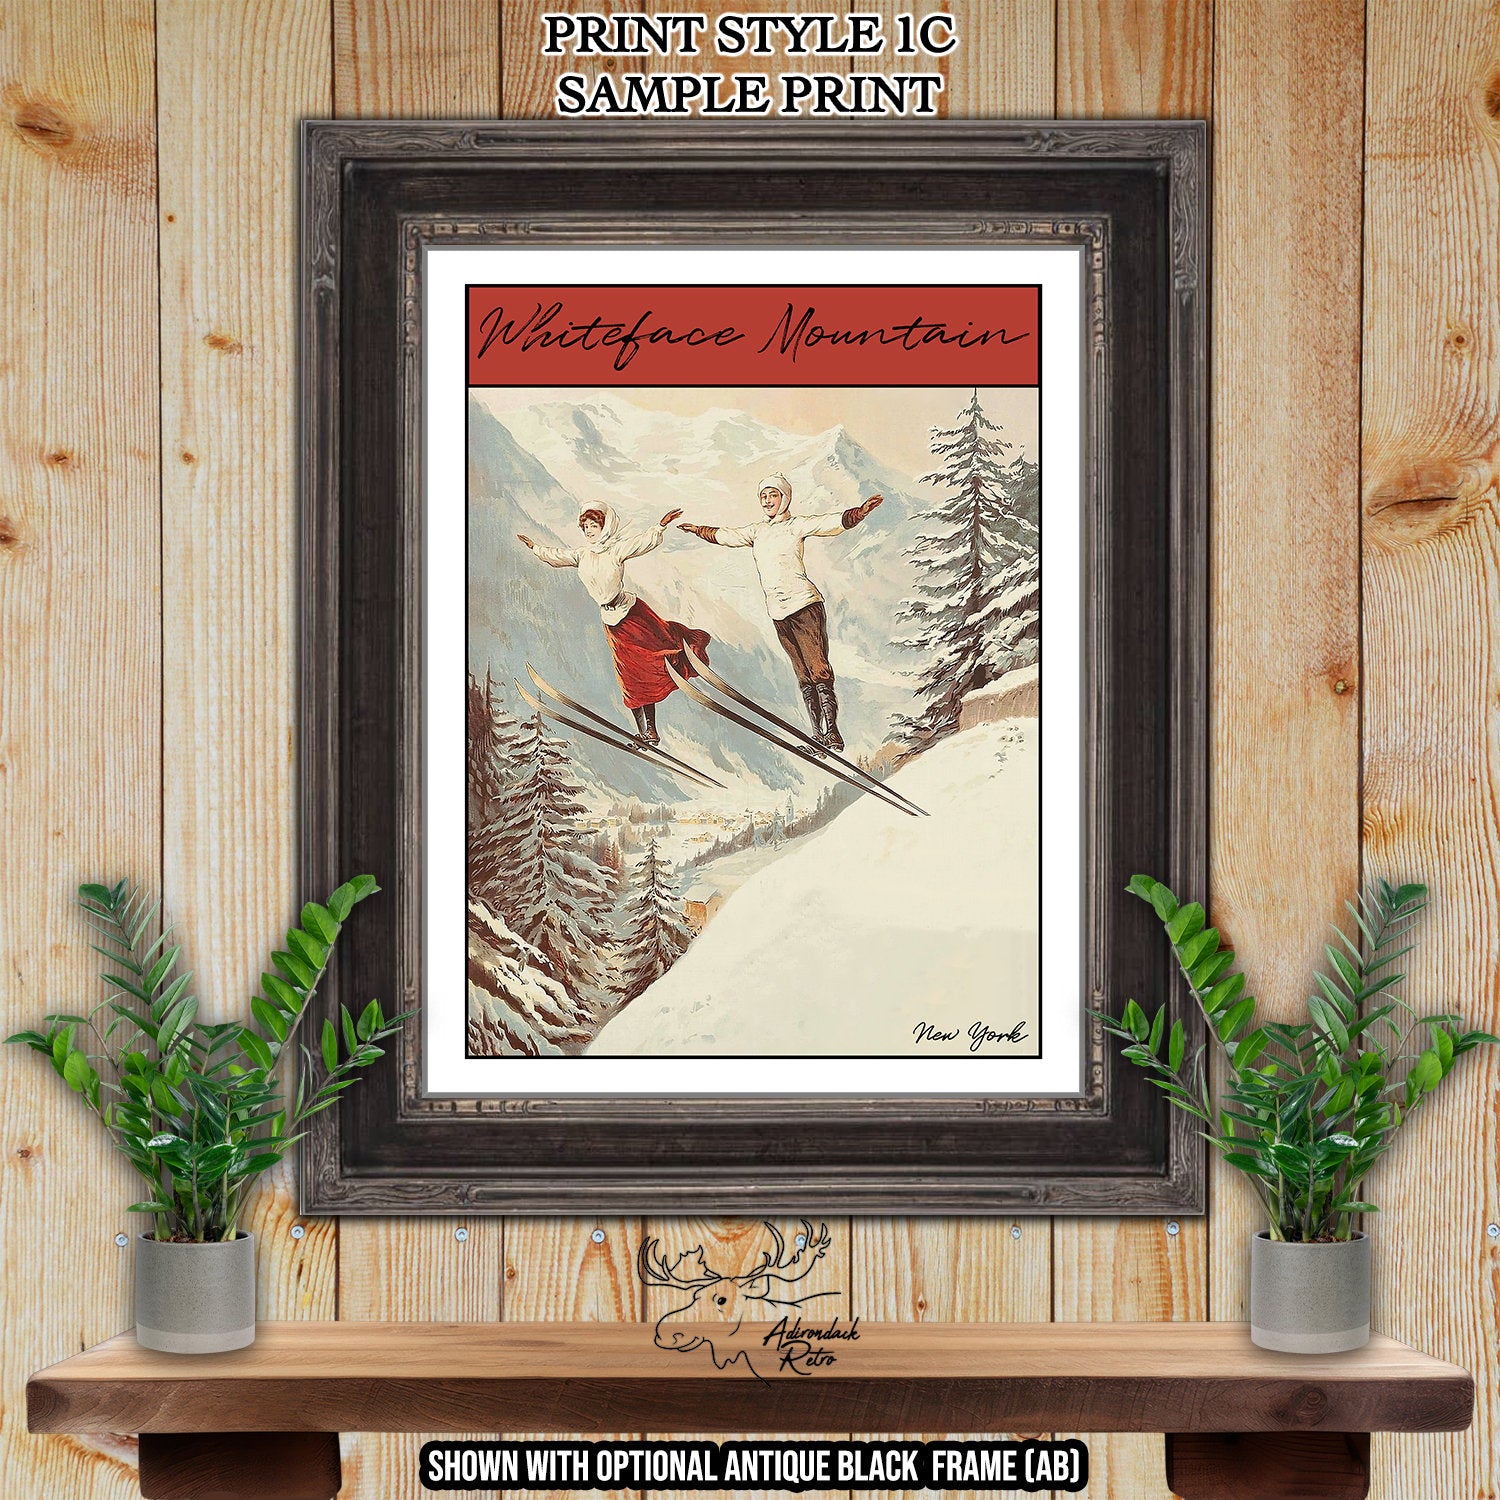 Deer Valley Utah Retro Ski Resort Print